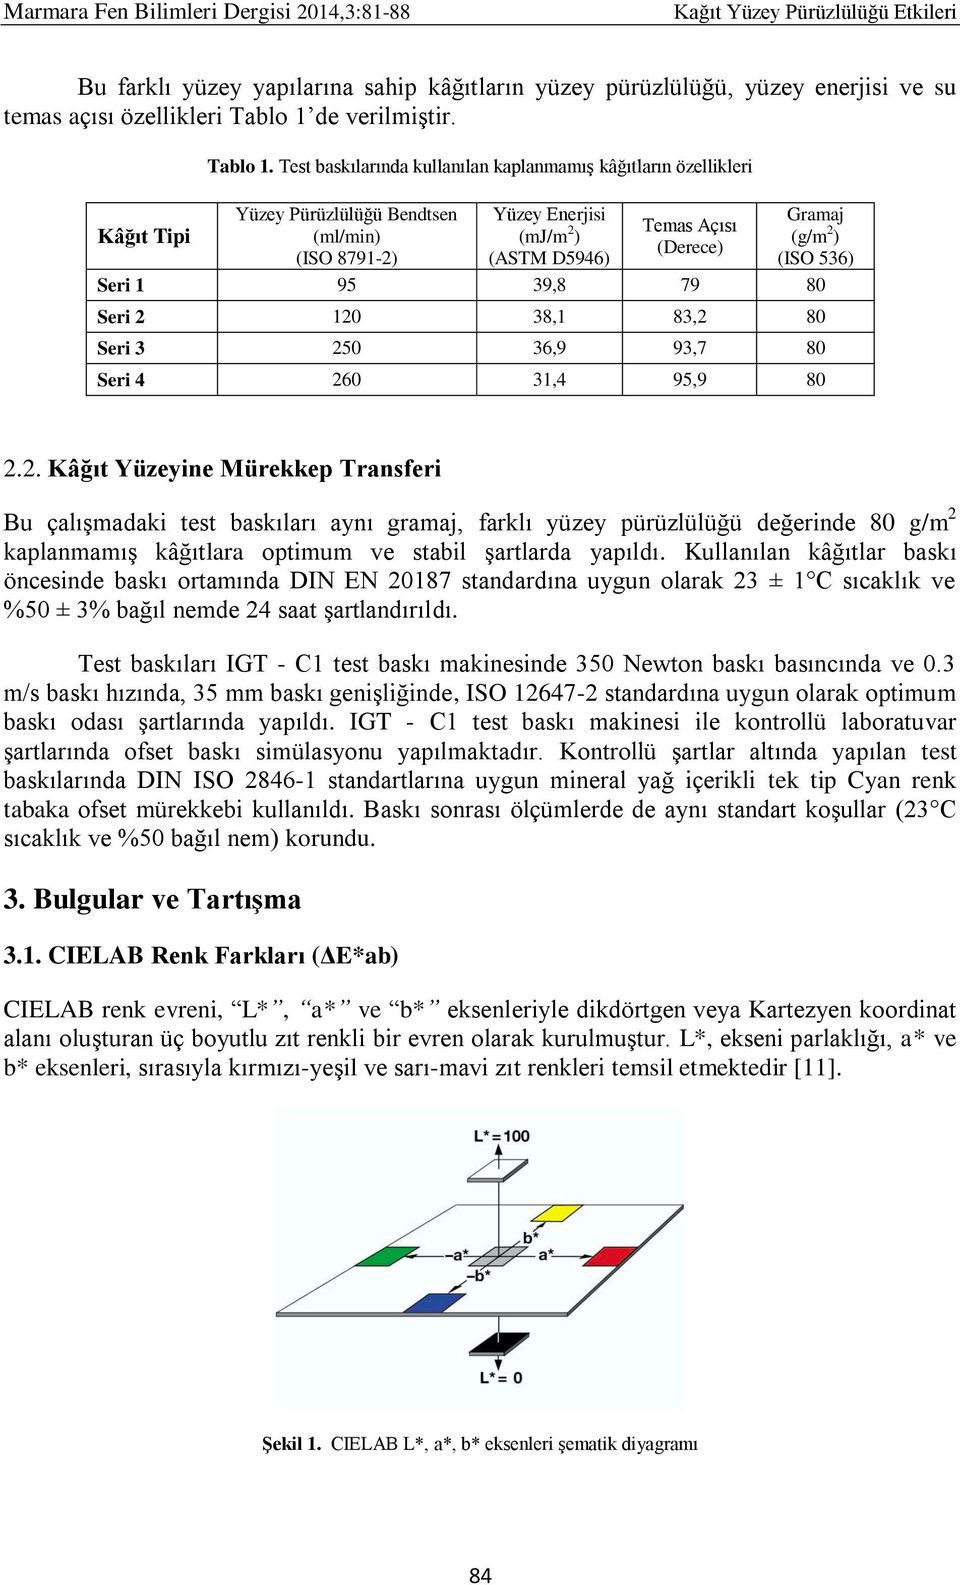 Test baskılarında kullanılan kaplanmamış kâğıtların özellikleri Yüzey Pürüzlülüğü Bendtsen Yüzey Enerjisi Gramaj Kâğıt Tipi (ml/min) (mj/m 2 Temas Açısı ) (g/m (Derece) 2 ) (ISO 8791-2) (ASTM D5946)